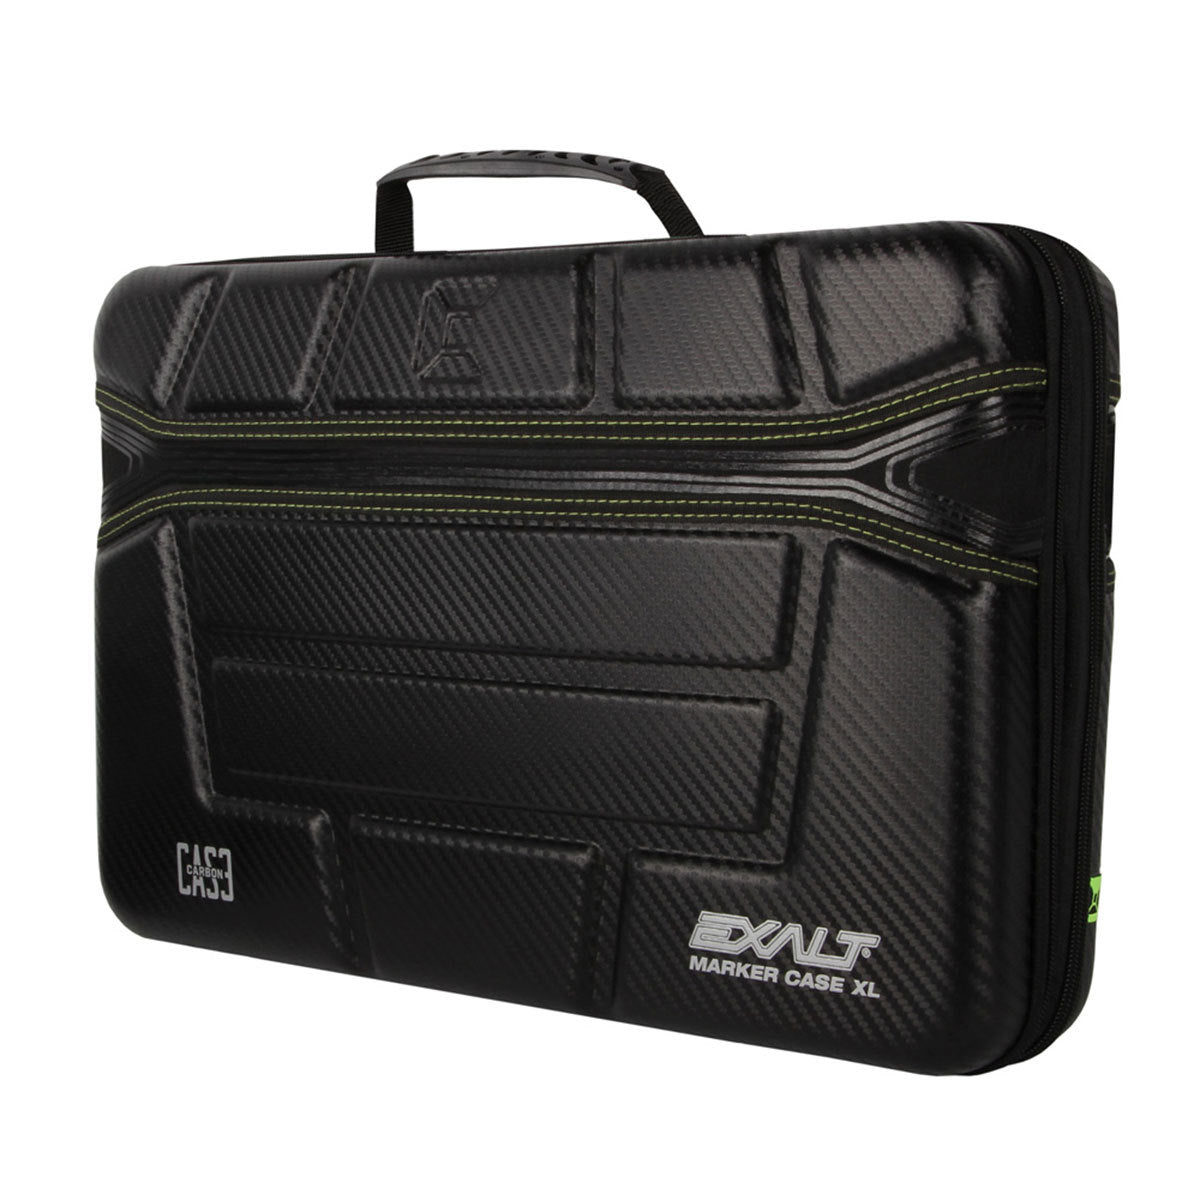 Exalt Hard XL Marker Case - Black/Lime